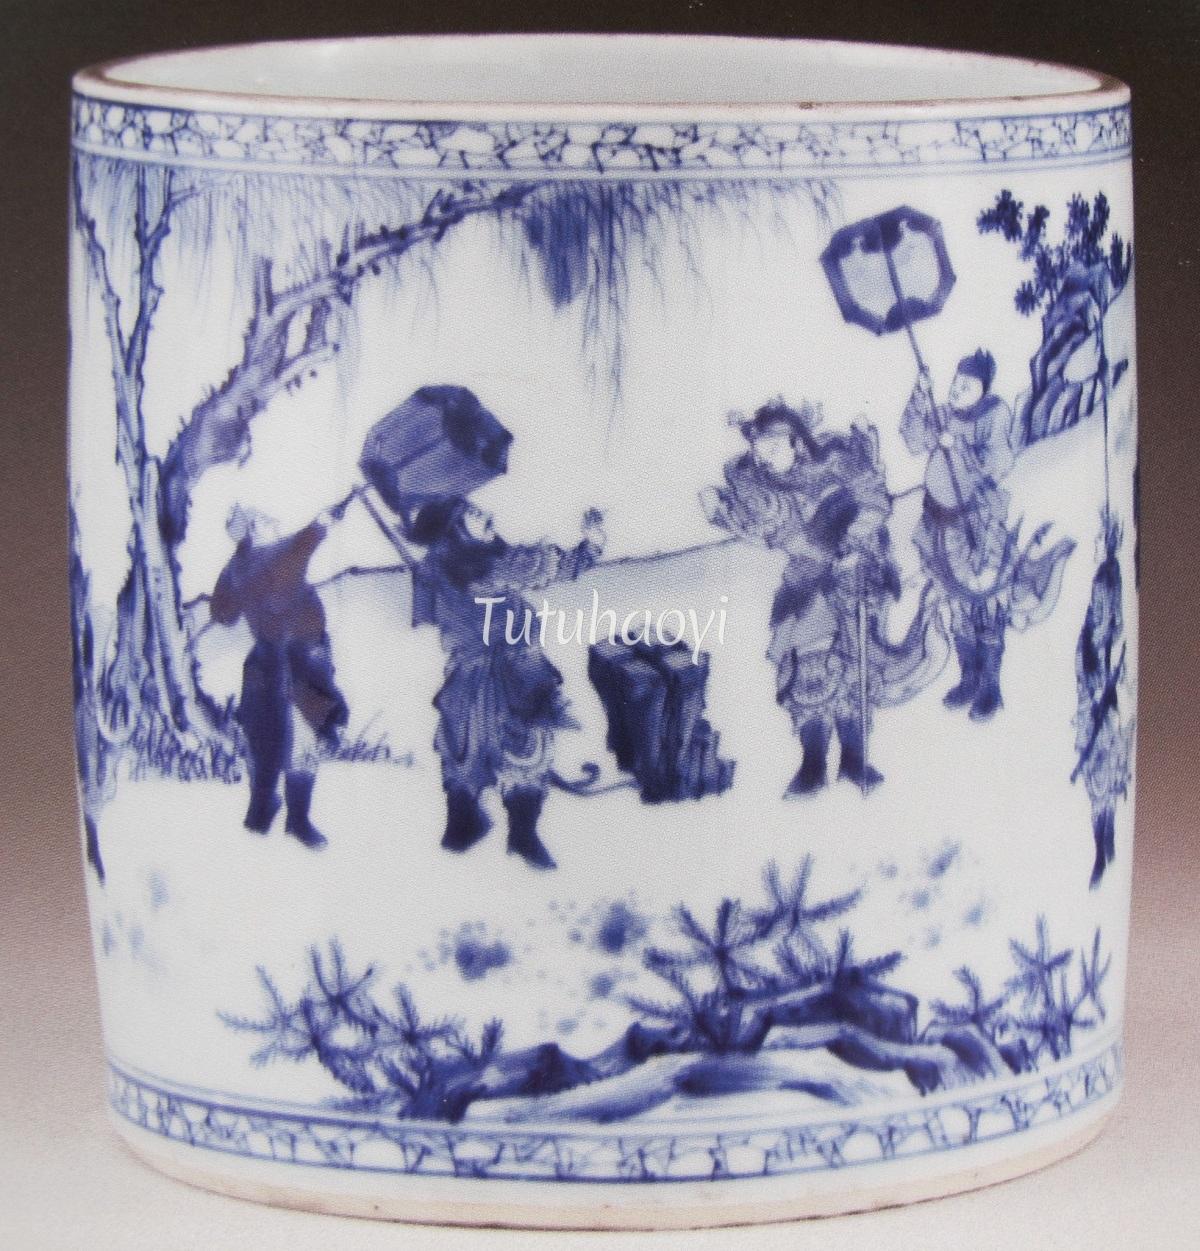 porcelain holder Liu Bei and Sun Quan holding swords